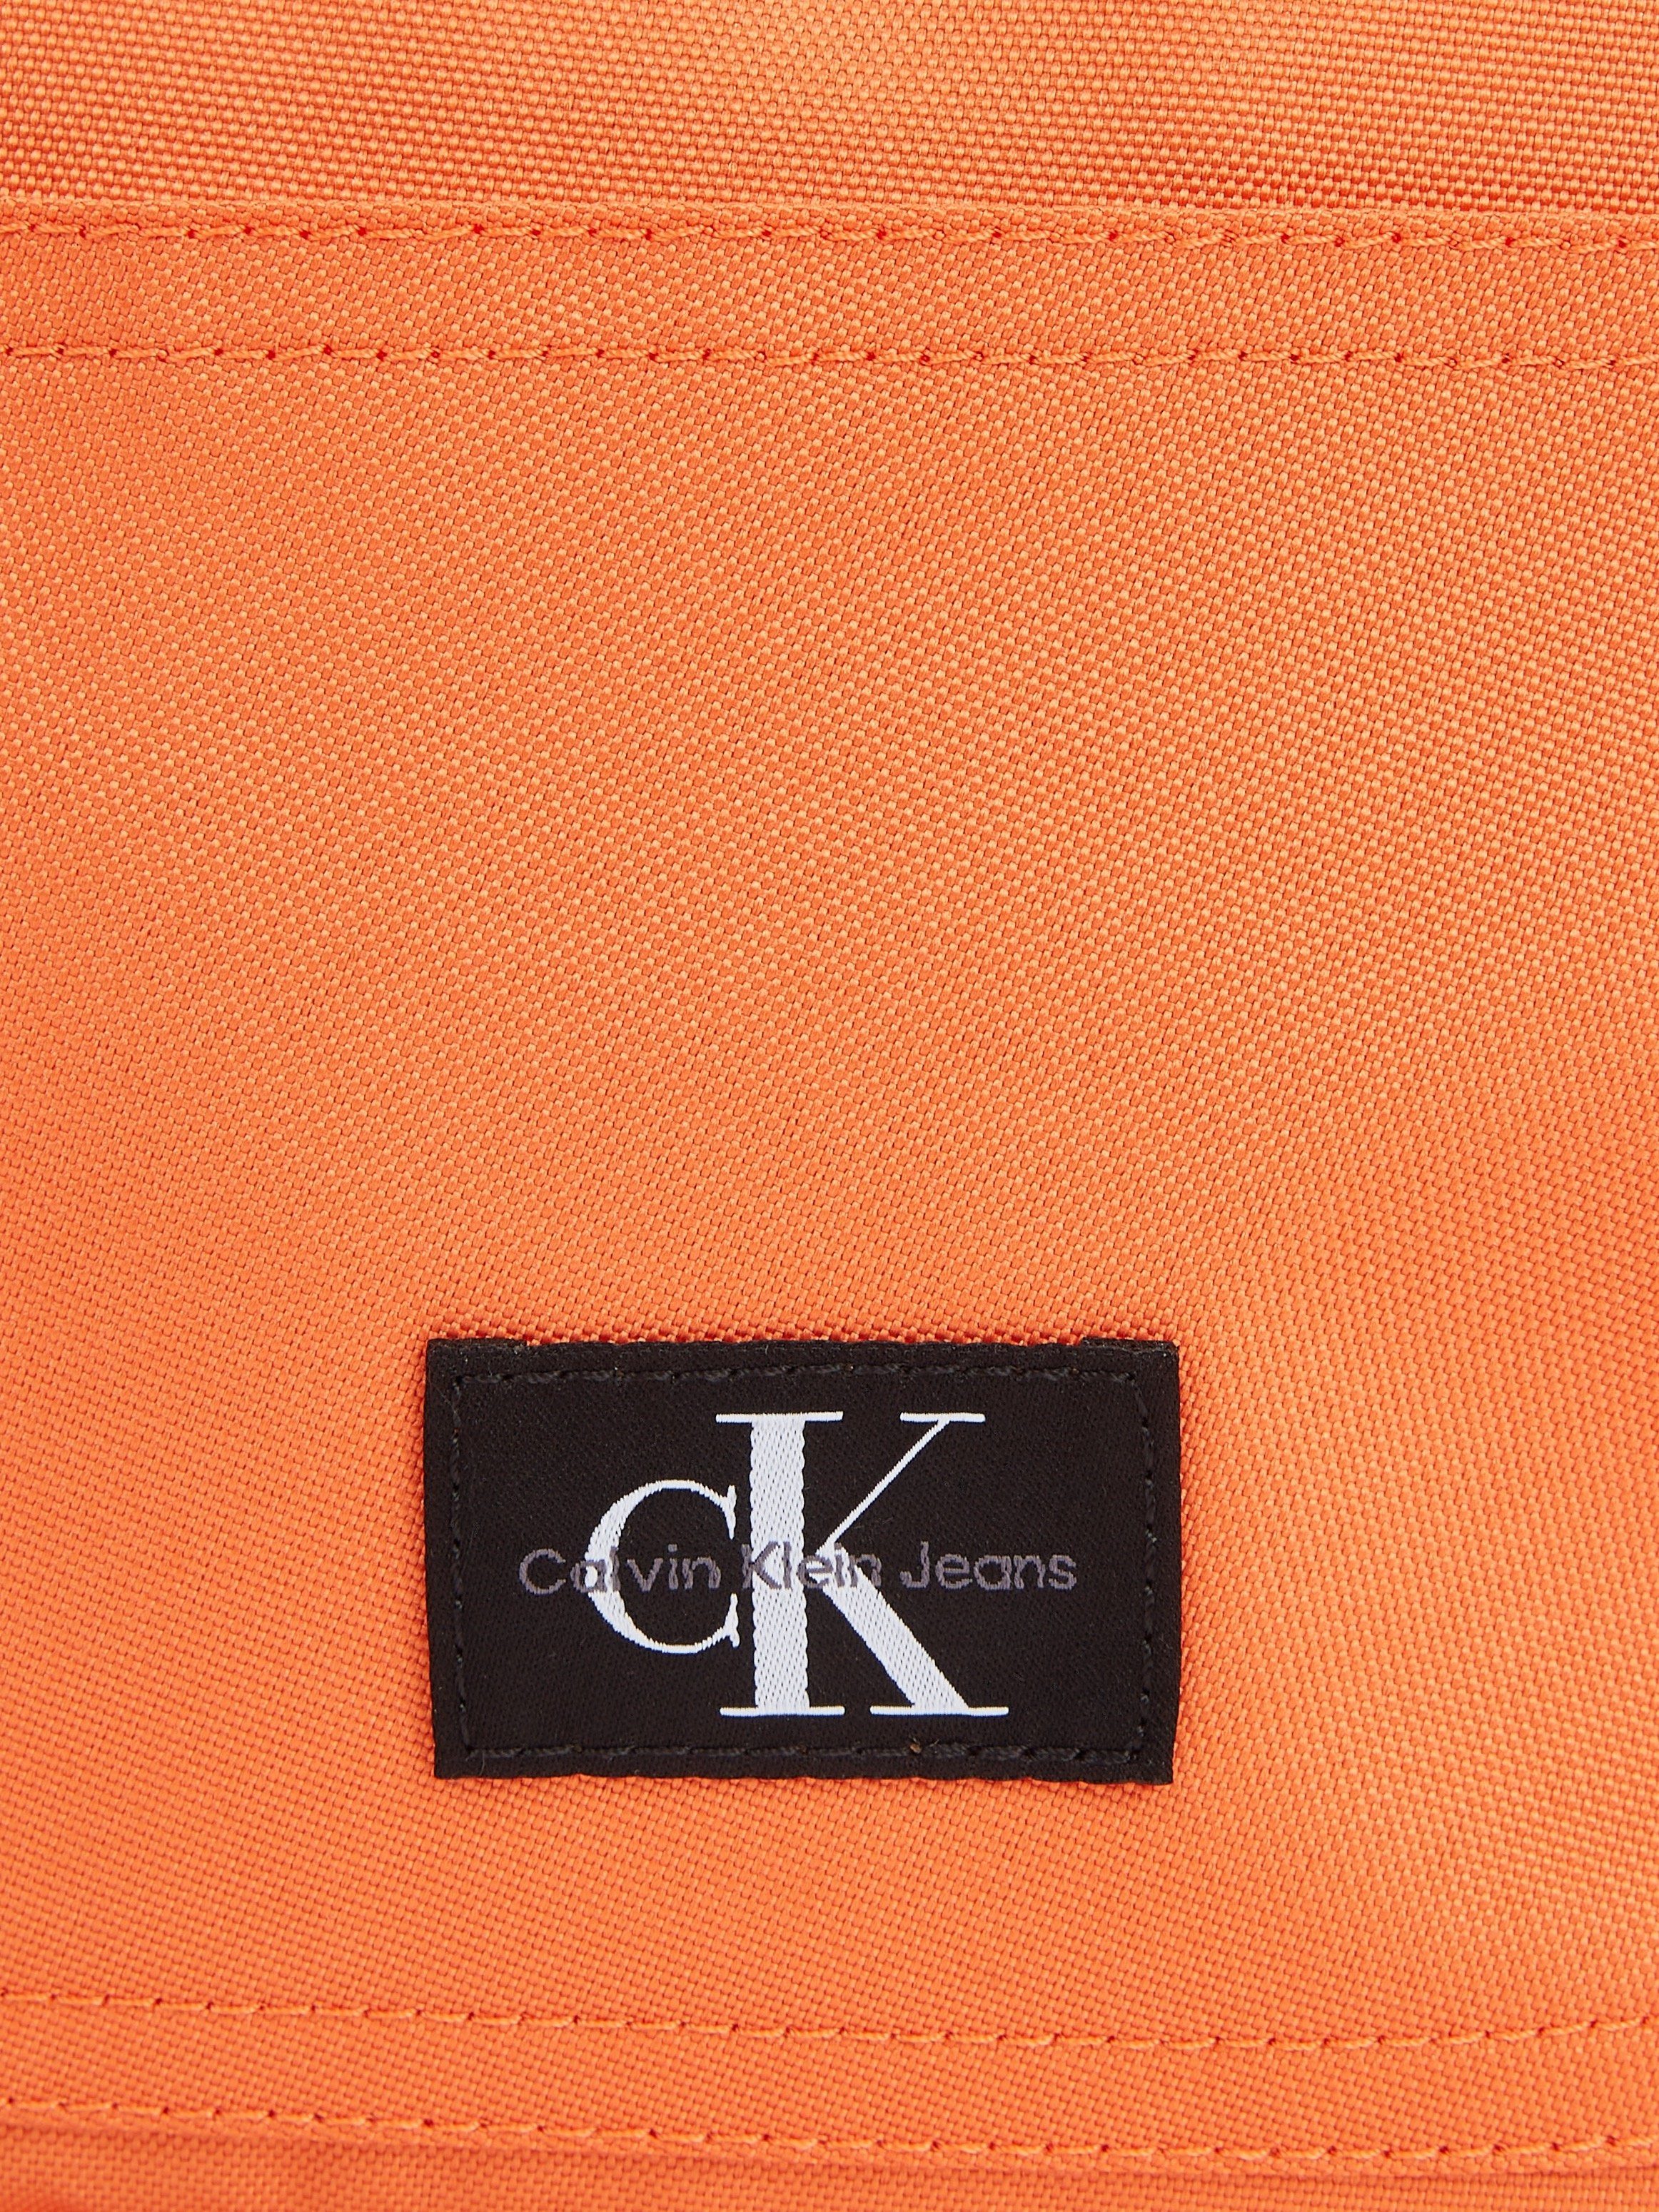 Calvin Klein BP40 SPORT in W, CAMPUS Jeans Design Cityrucksack dezentem ESSENTIALS koralle